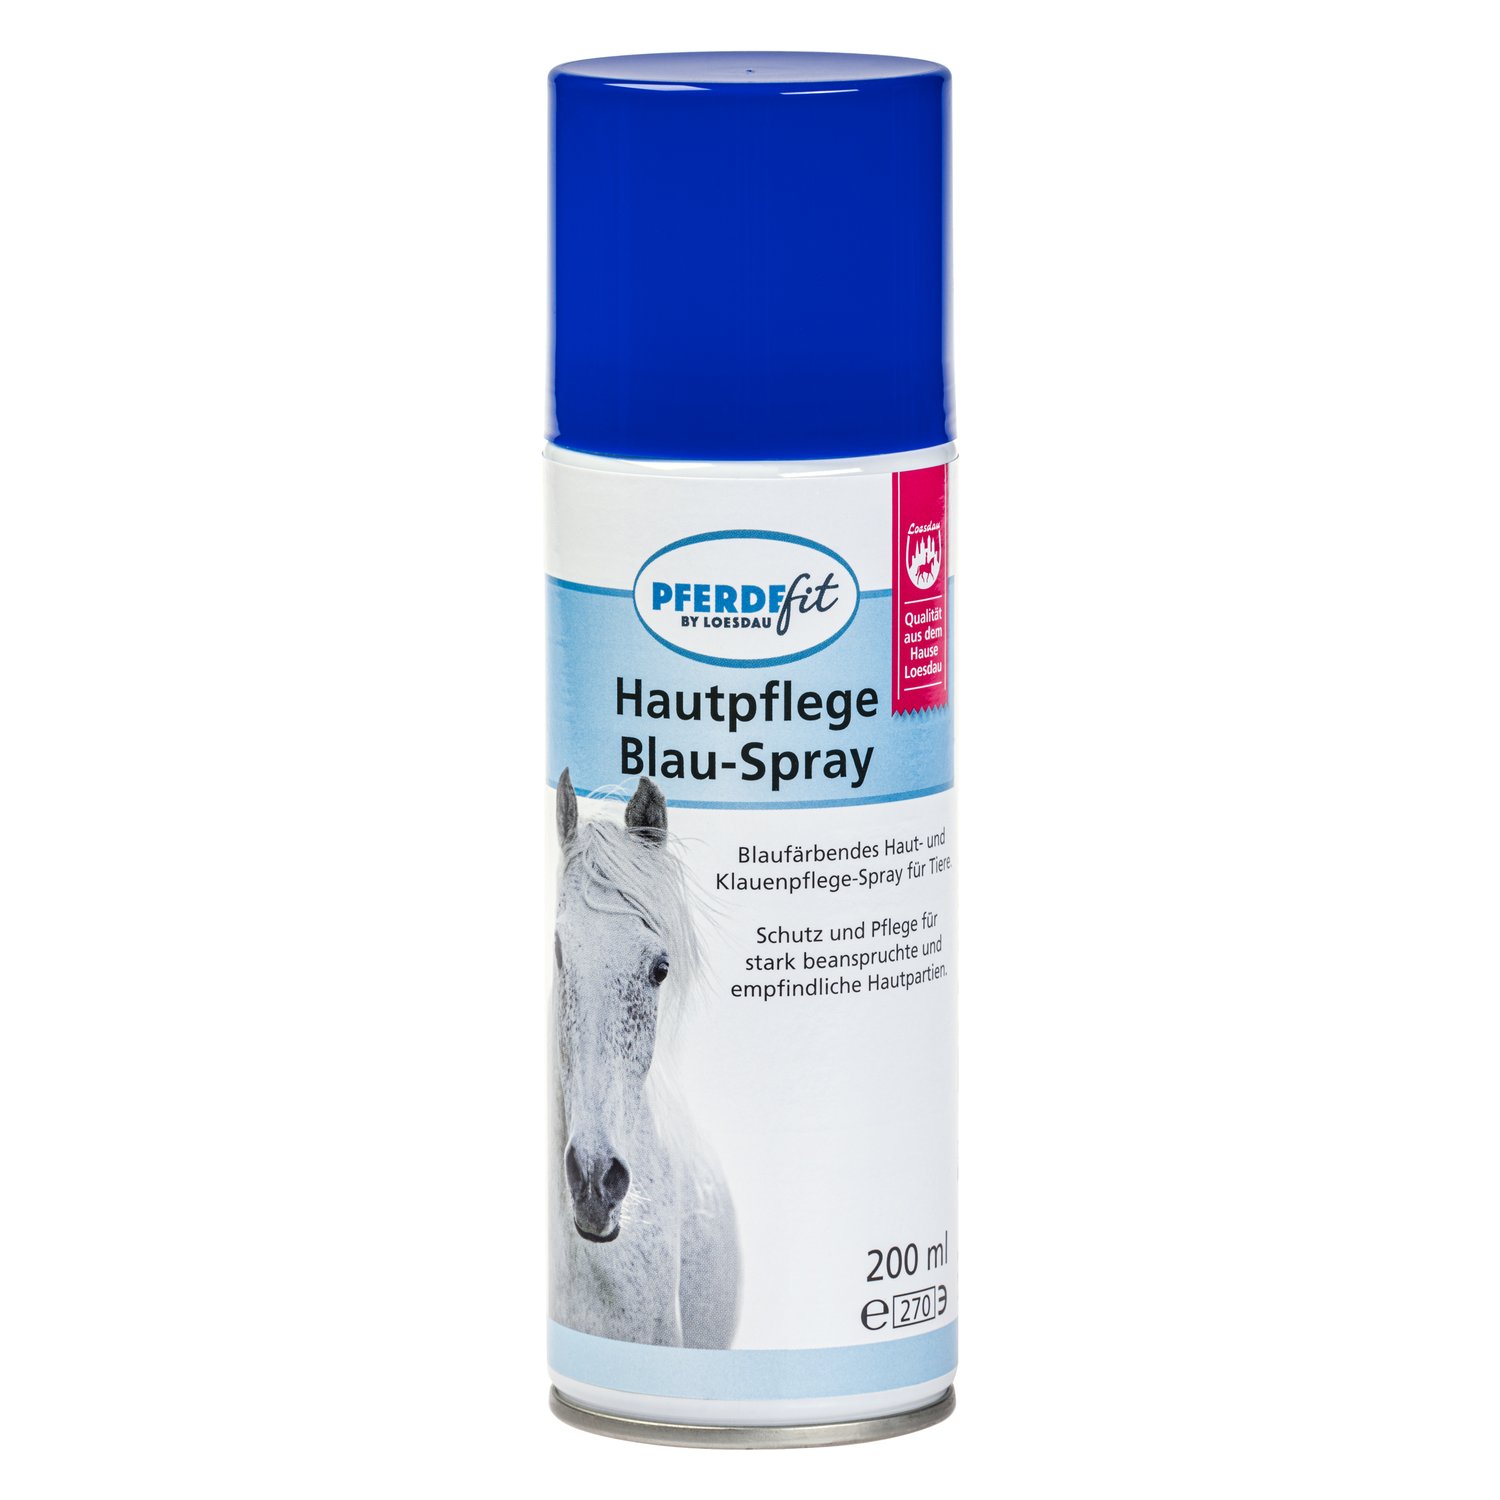 PFERDEfit by Loesdau Hautpflege Blau-Spray 200 ml